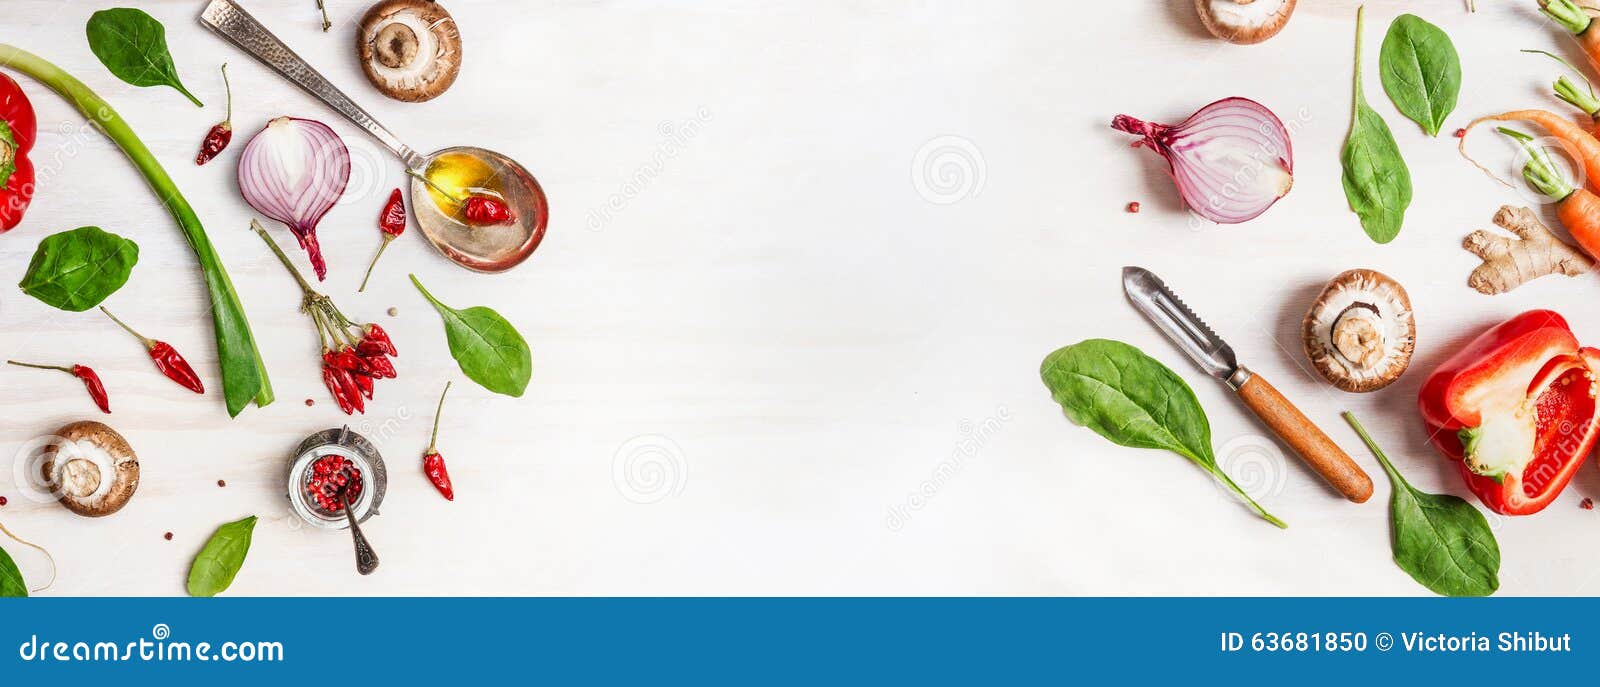 https://thumbs.dreamstime.com/z/healthy-food-background-various-vegetables-ingredients-spoon-oil-peeler-top-view-63681850.jpg